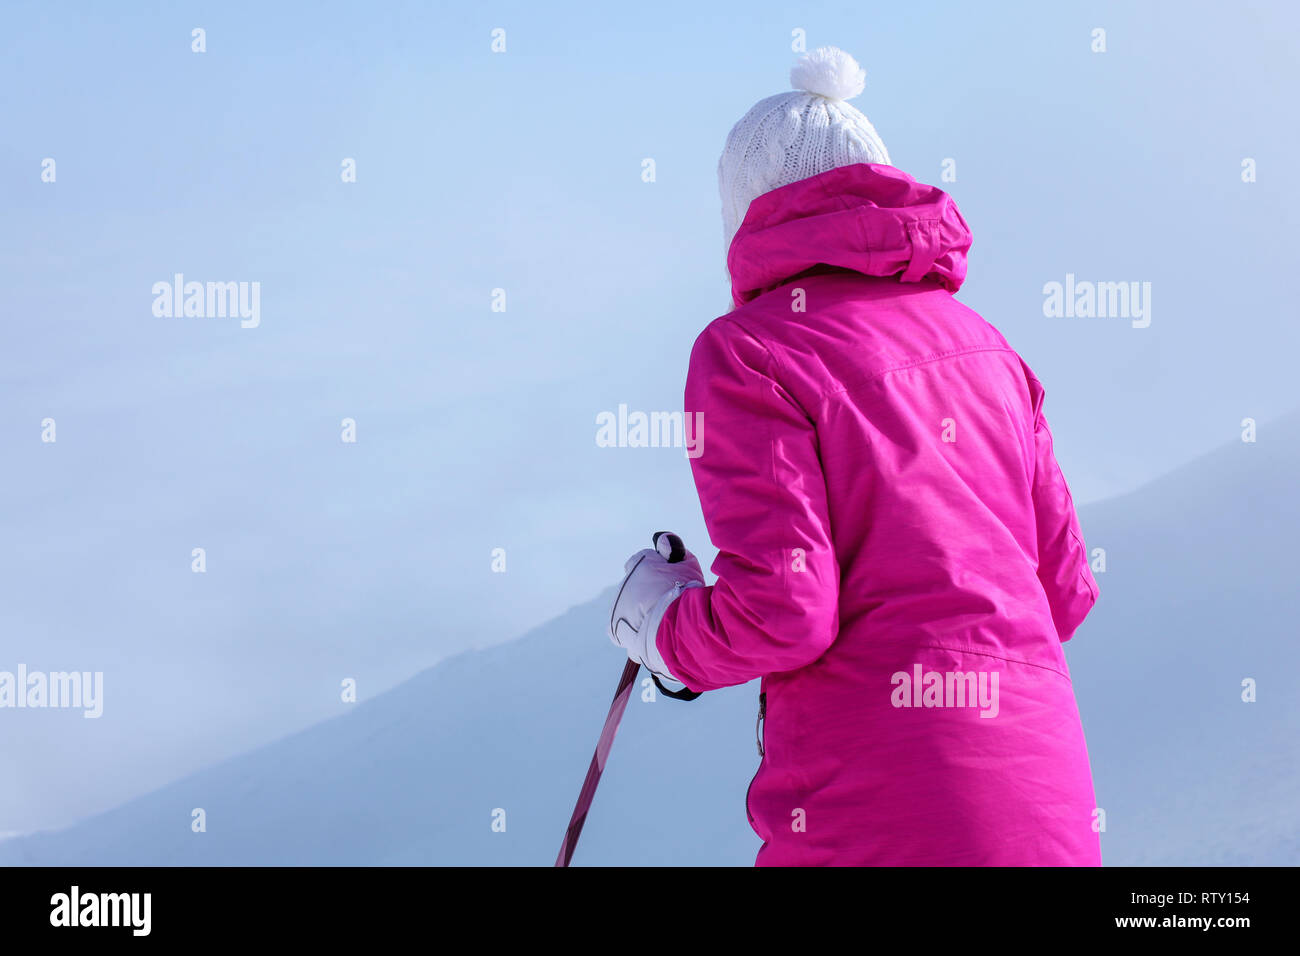 Von hinten betrachten, junge Frau in rosa Winterjacke, Stöcke in die Hände, um den Hügel hinunter zu gehen. Stockfoto